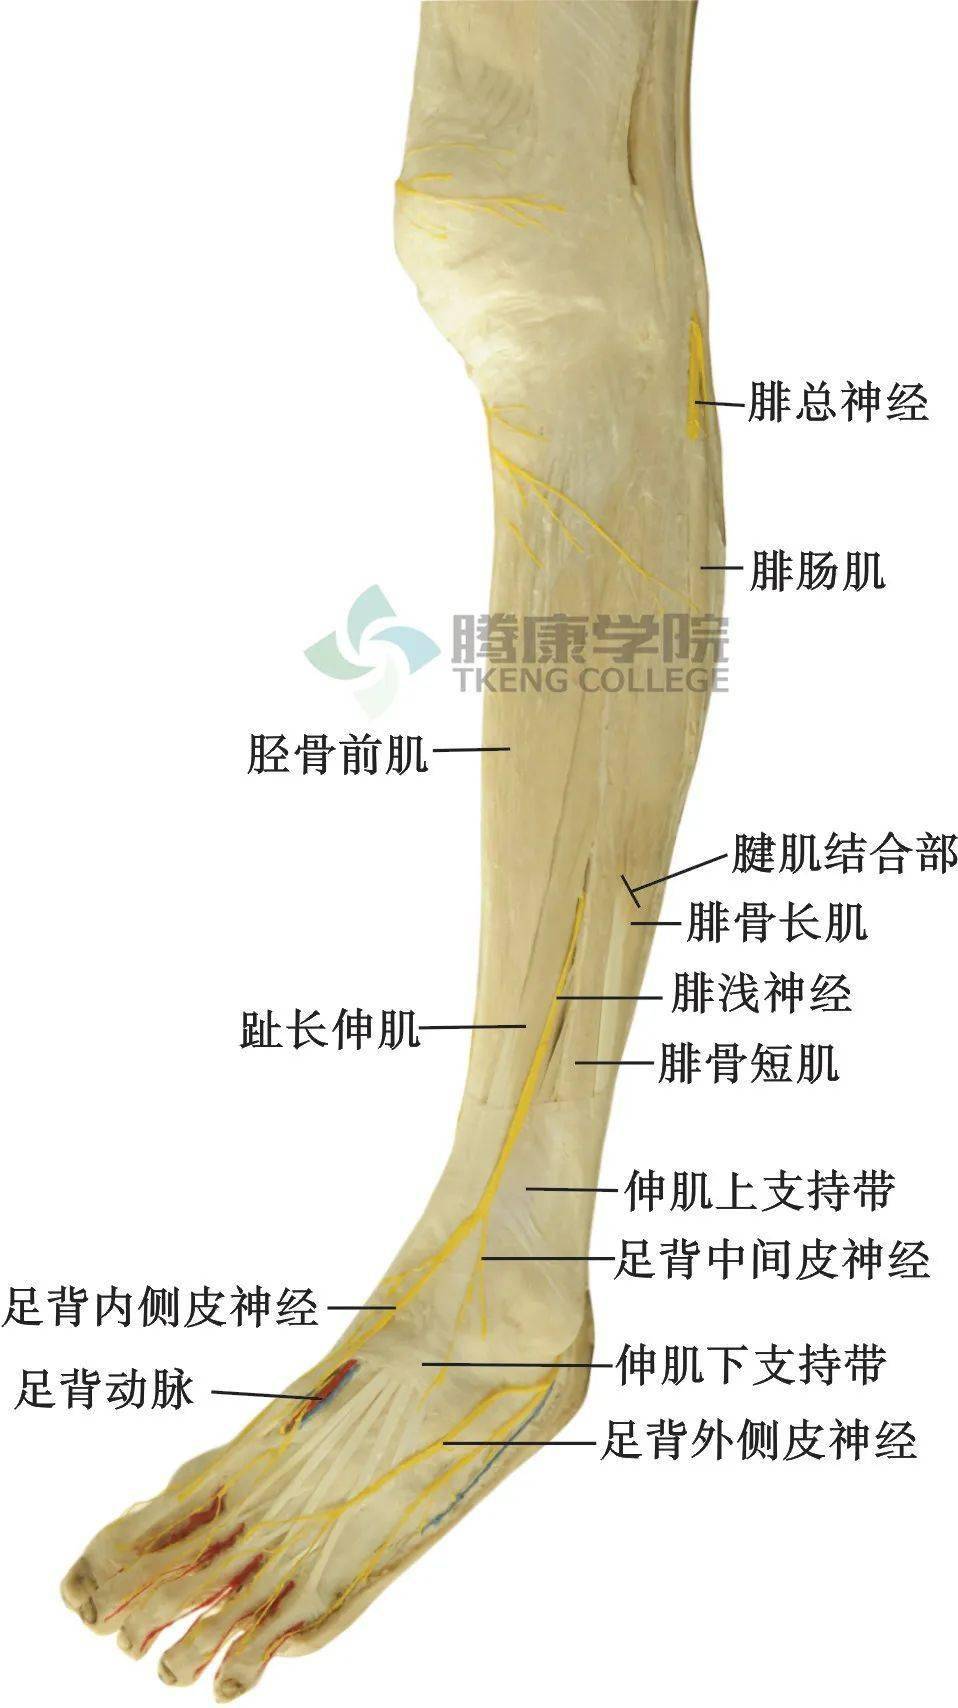 胫骨前肌解剖图图片